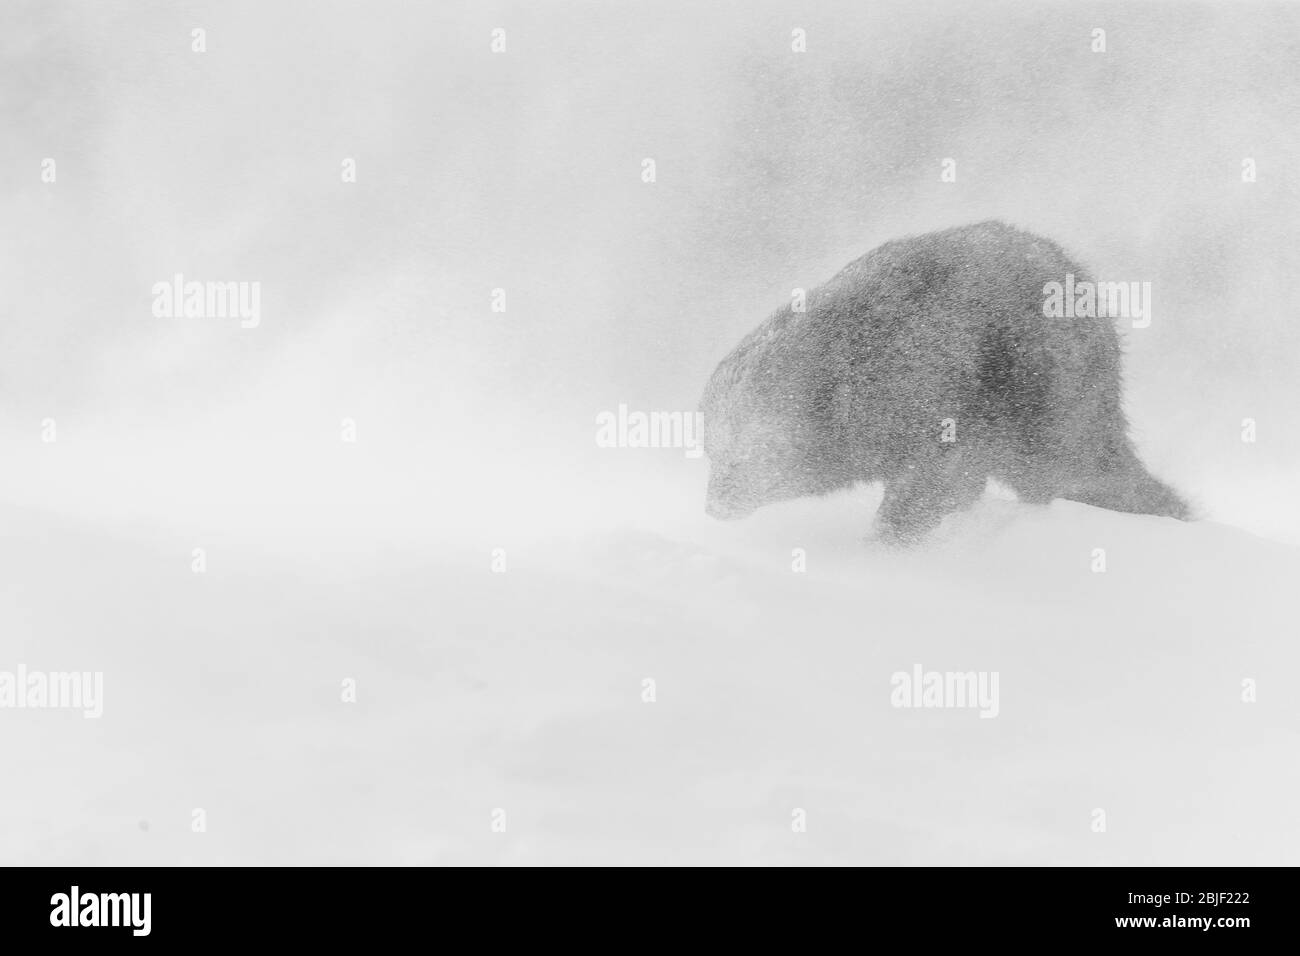 Volpe artiche (lagopus di Vulpes) che cammina attraverso una tempesta di neve Foto Stock